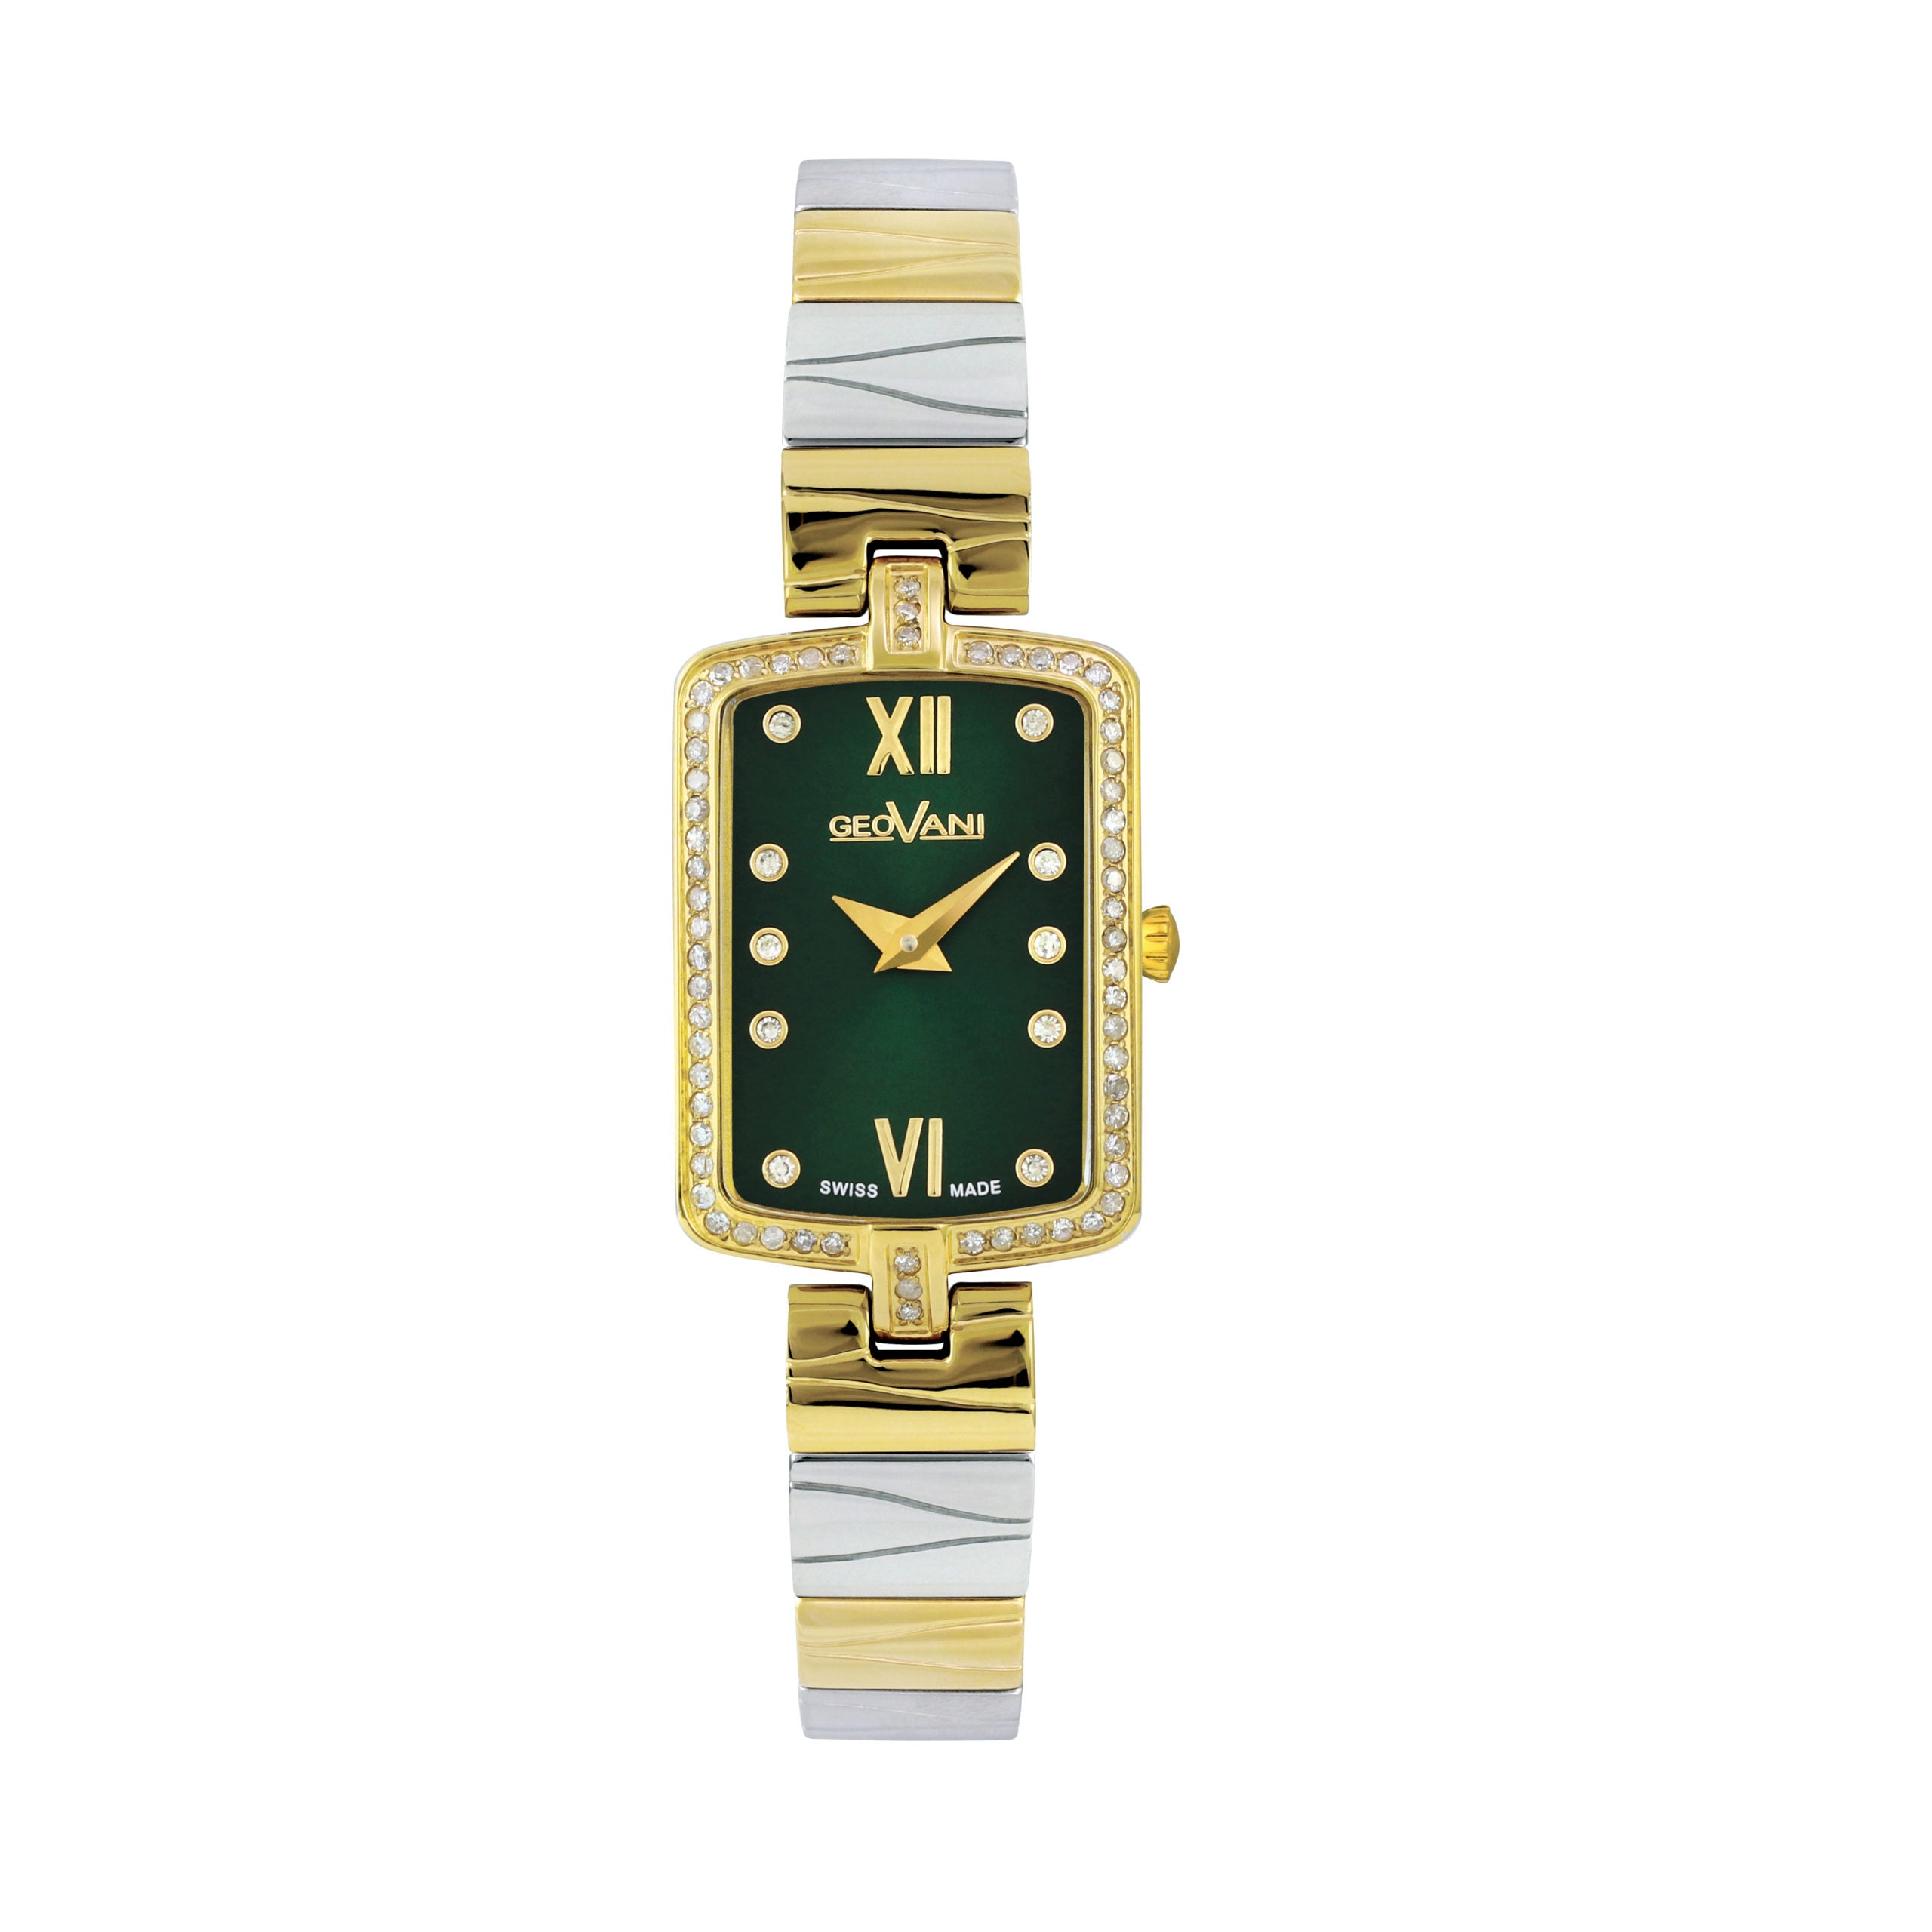 Giovanni Women's Swiss Quartz Watch with Green Dial - GEO-0008